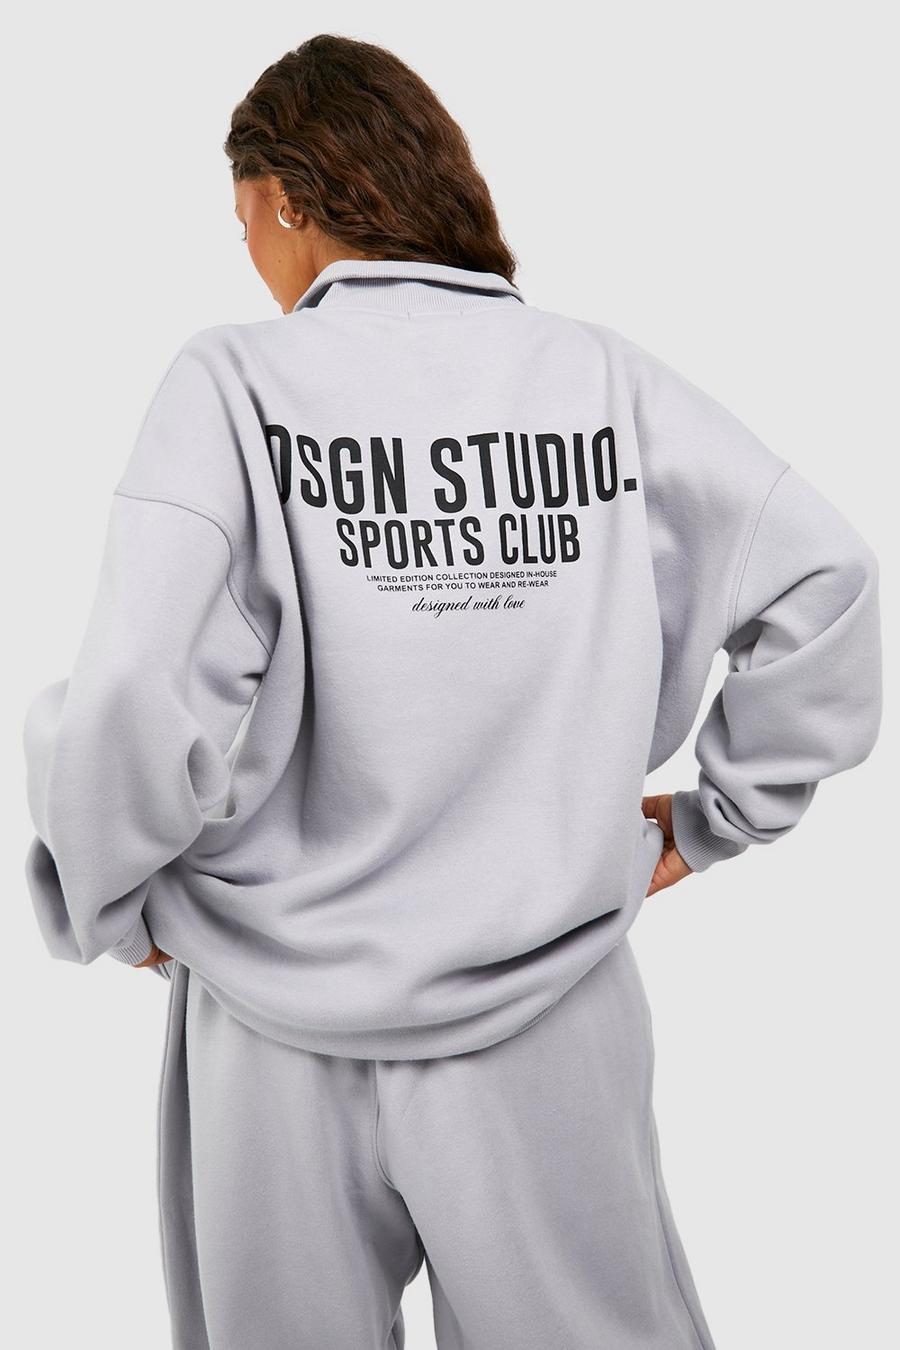 Oversize Sweatshirt mit Dsgn Studio Sports Club Print und halbem Reißverschluss, Ice grey